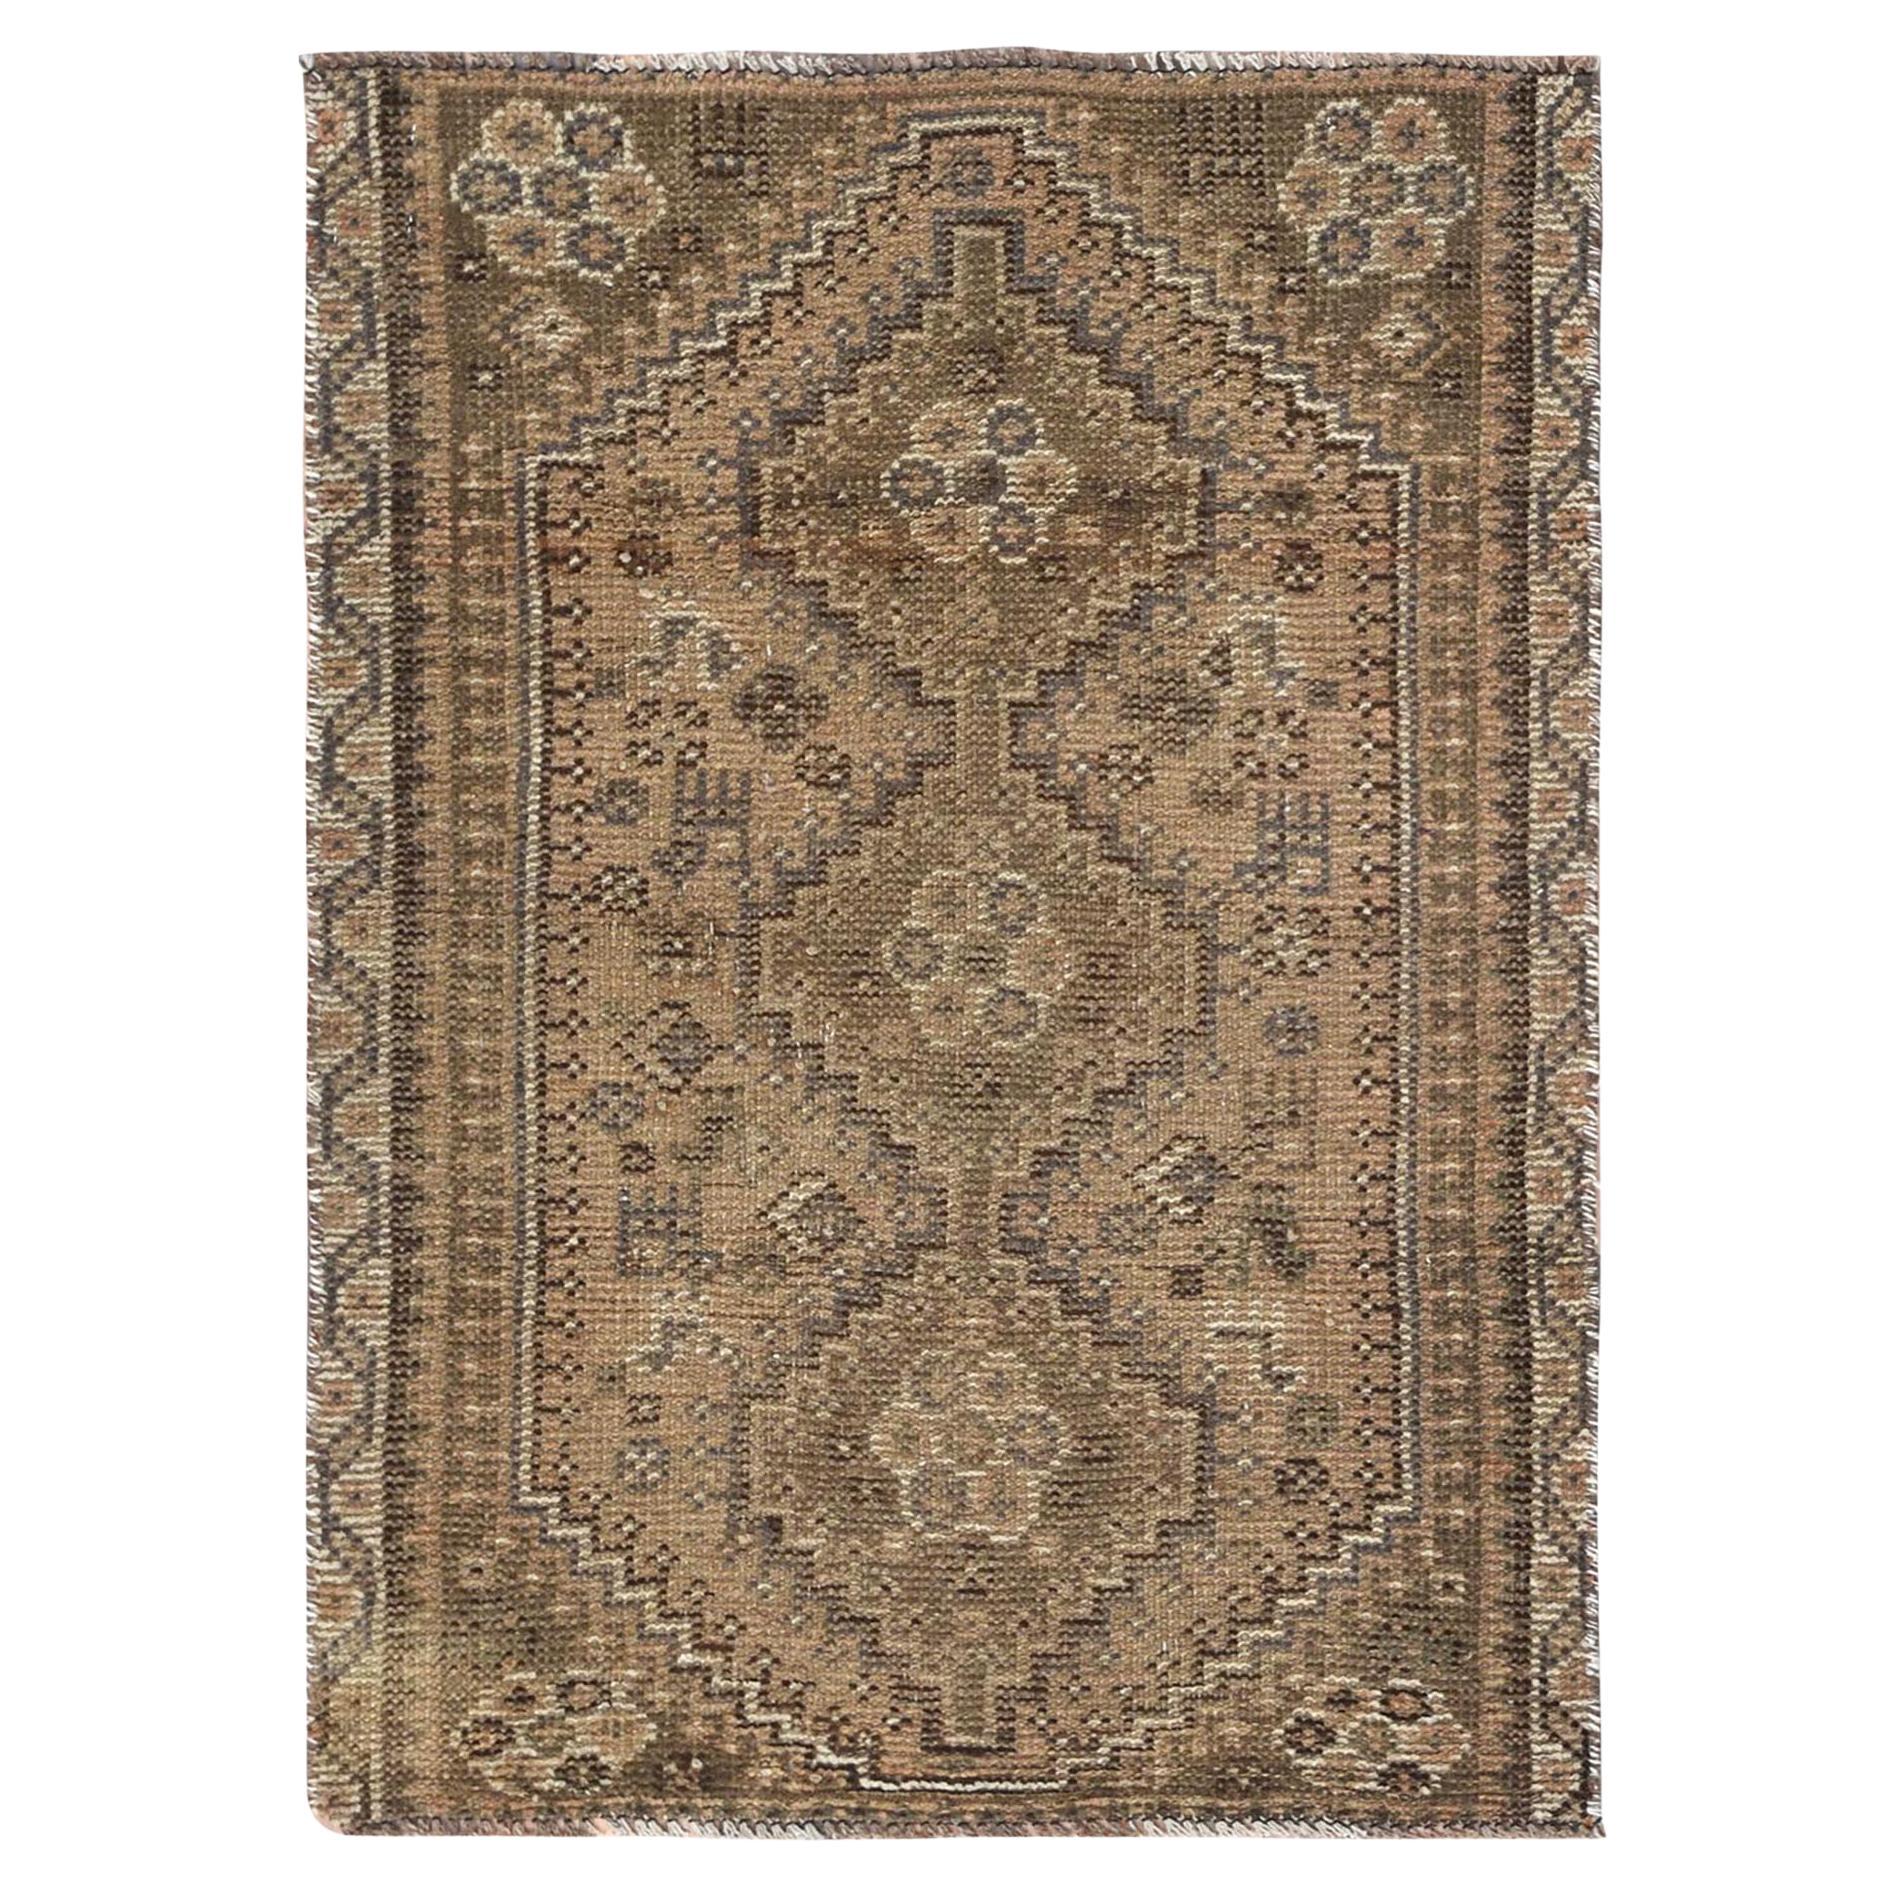 Tortilla Brauner handgeknüpfter, halb antiker, persischer, getragener Daunenteppich aus reiner Wolle